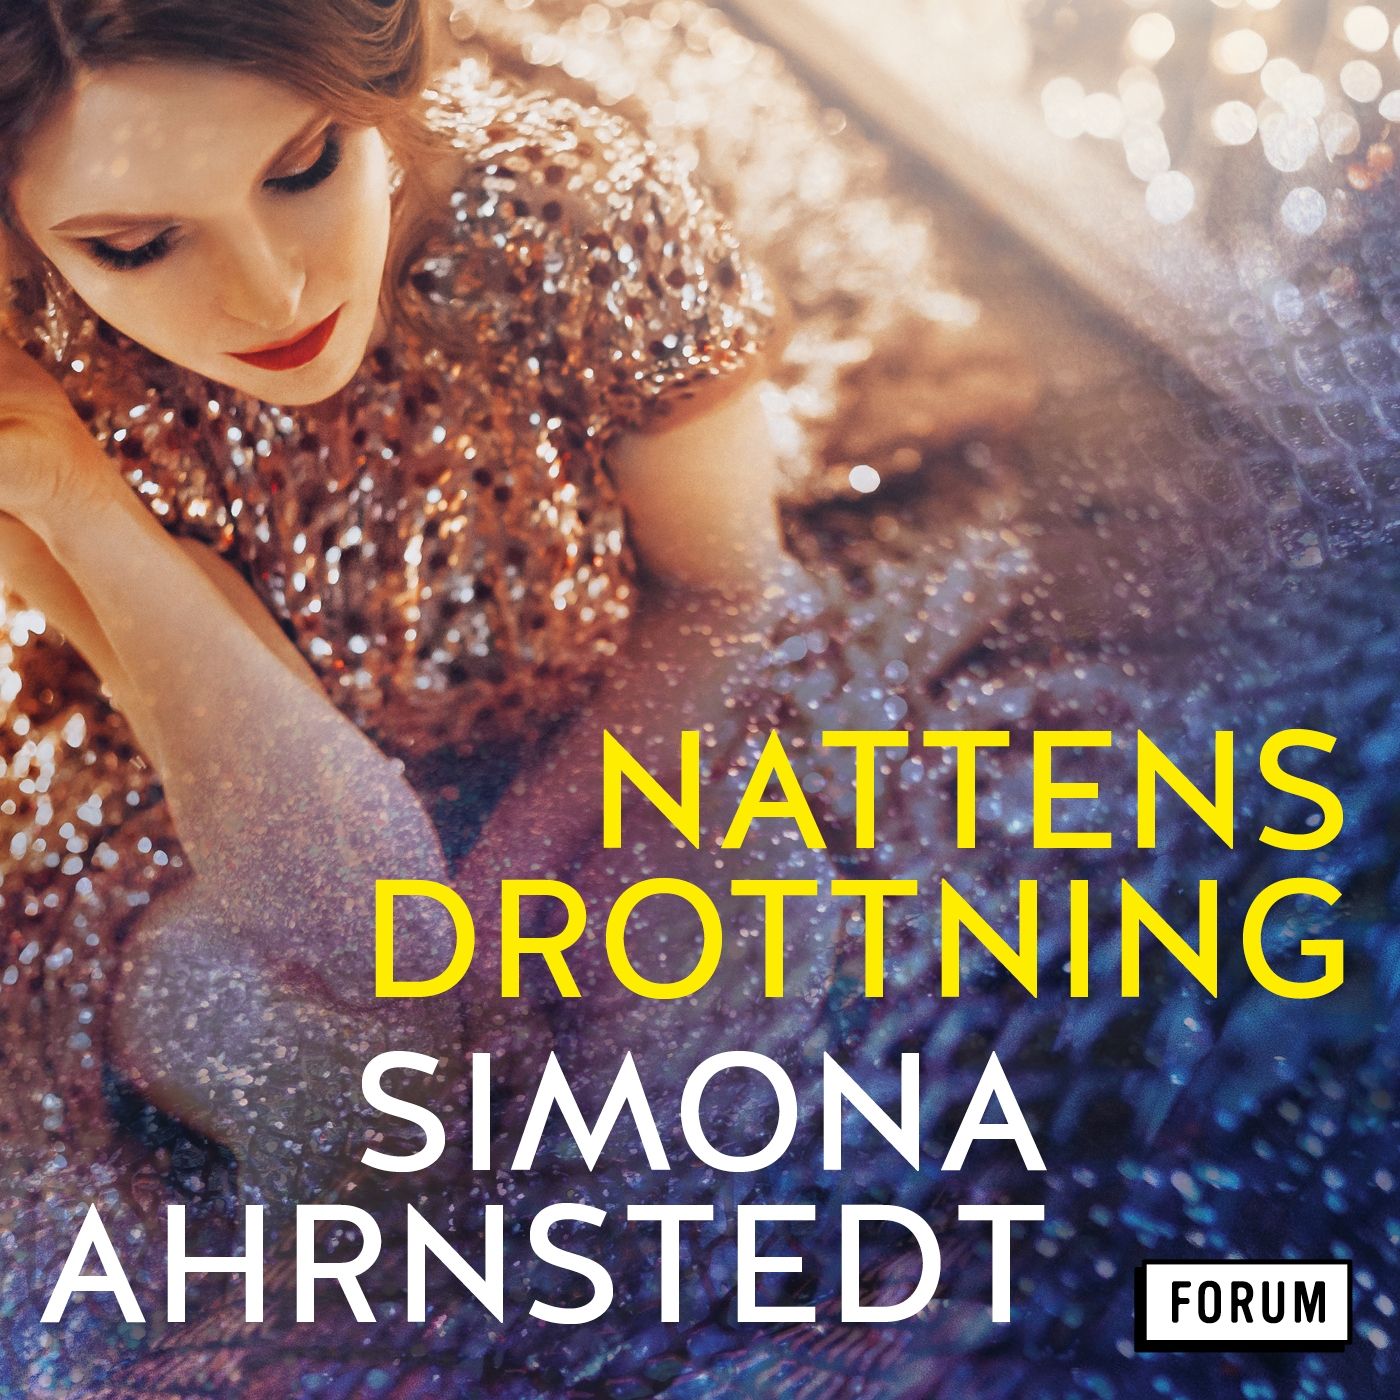 Nattens drottning, ljudbok av Simona Ahrnstedt